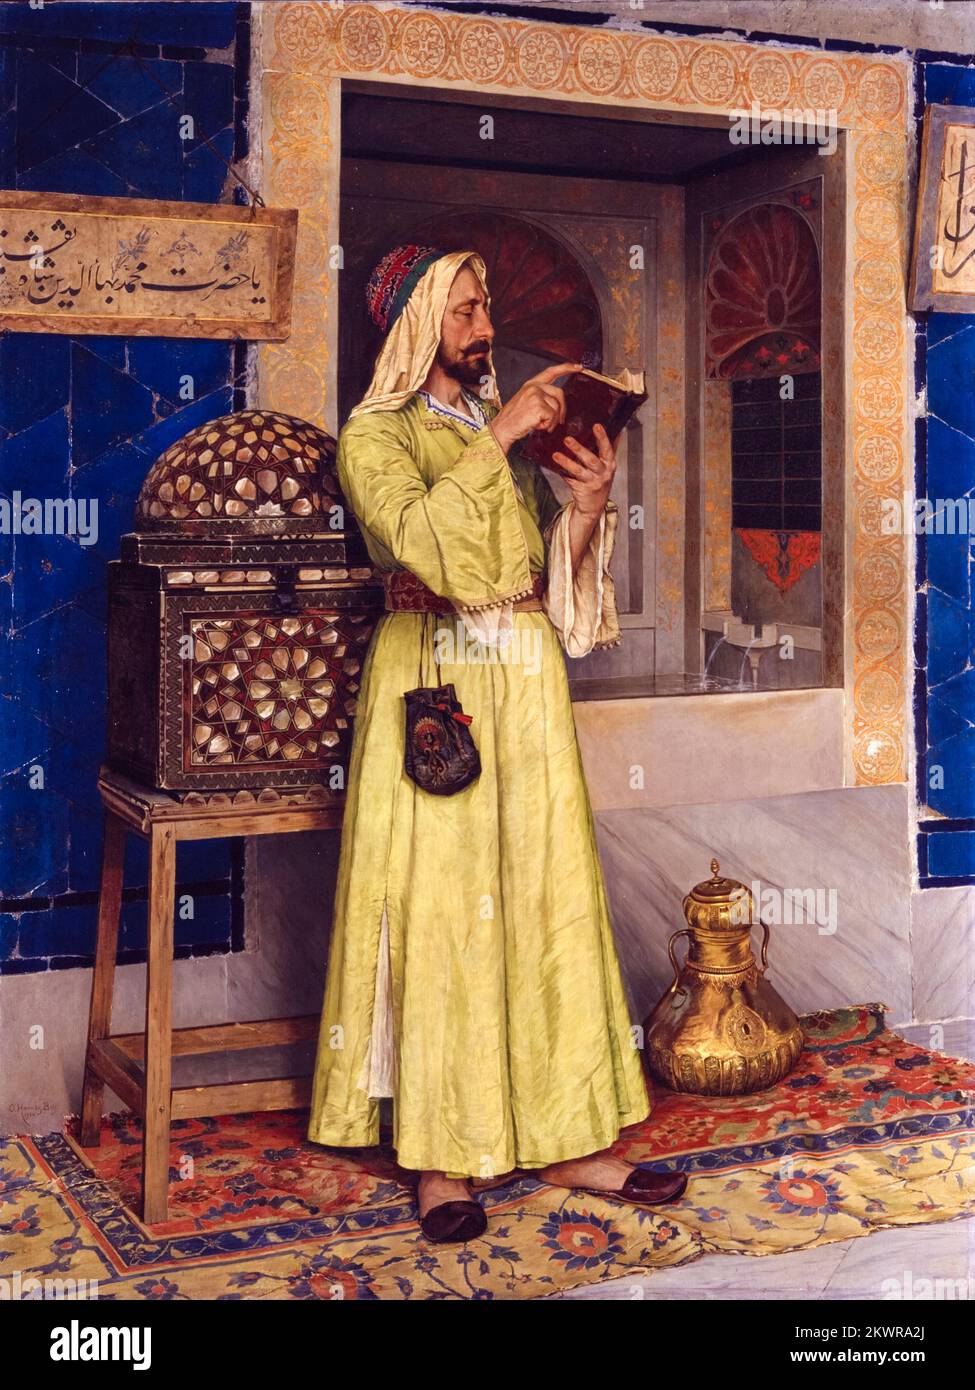 Osman Hamdi Bey, der Wunderbrunnen (Arab man Reading), in Öl auf Leinwand gemalt, 1904 Stockfoto